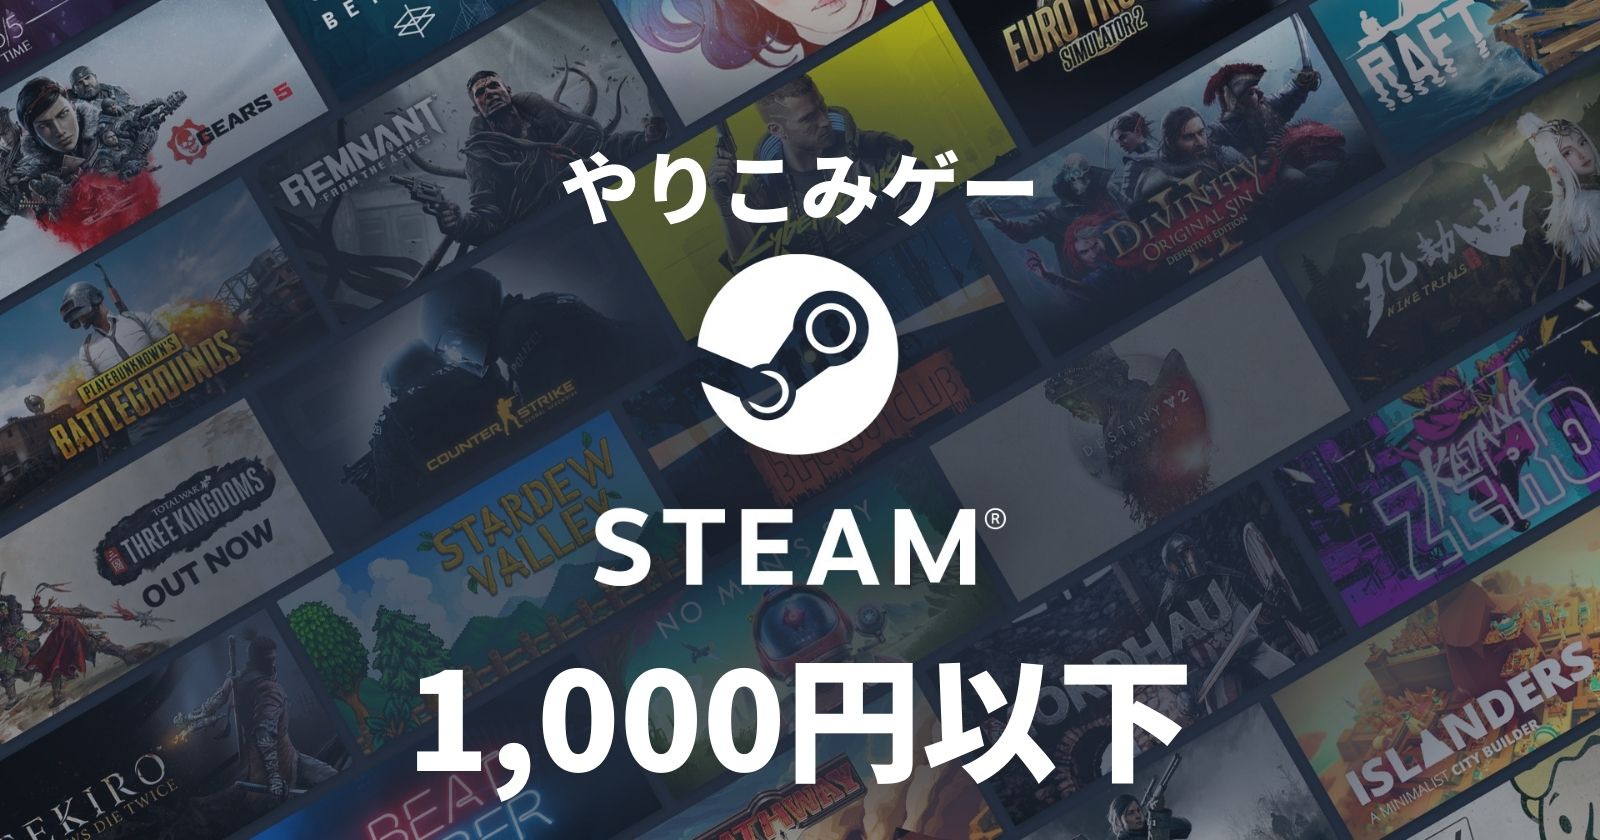 Steamセールで1 000円以下 何十時間もやり込めるコスパ抜群のおすすめゲーム5選 あおいろのブログ